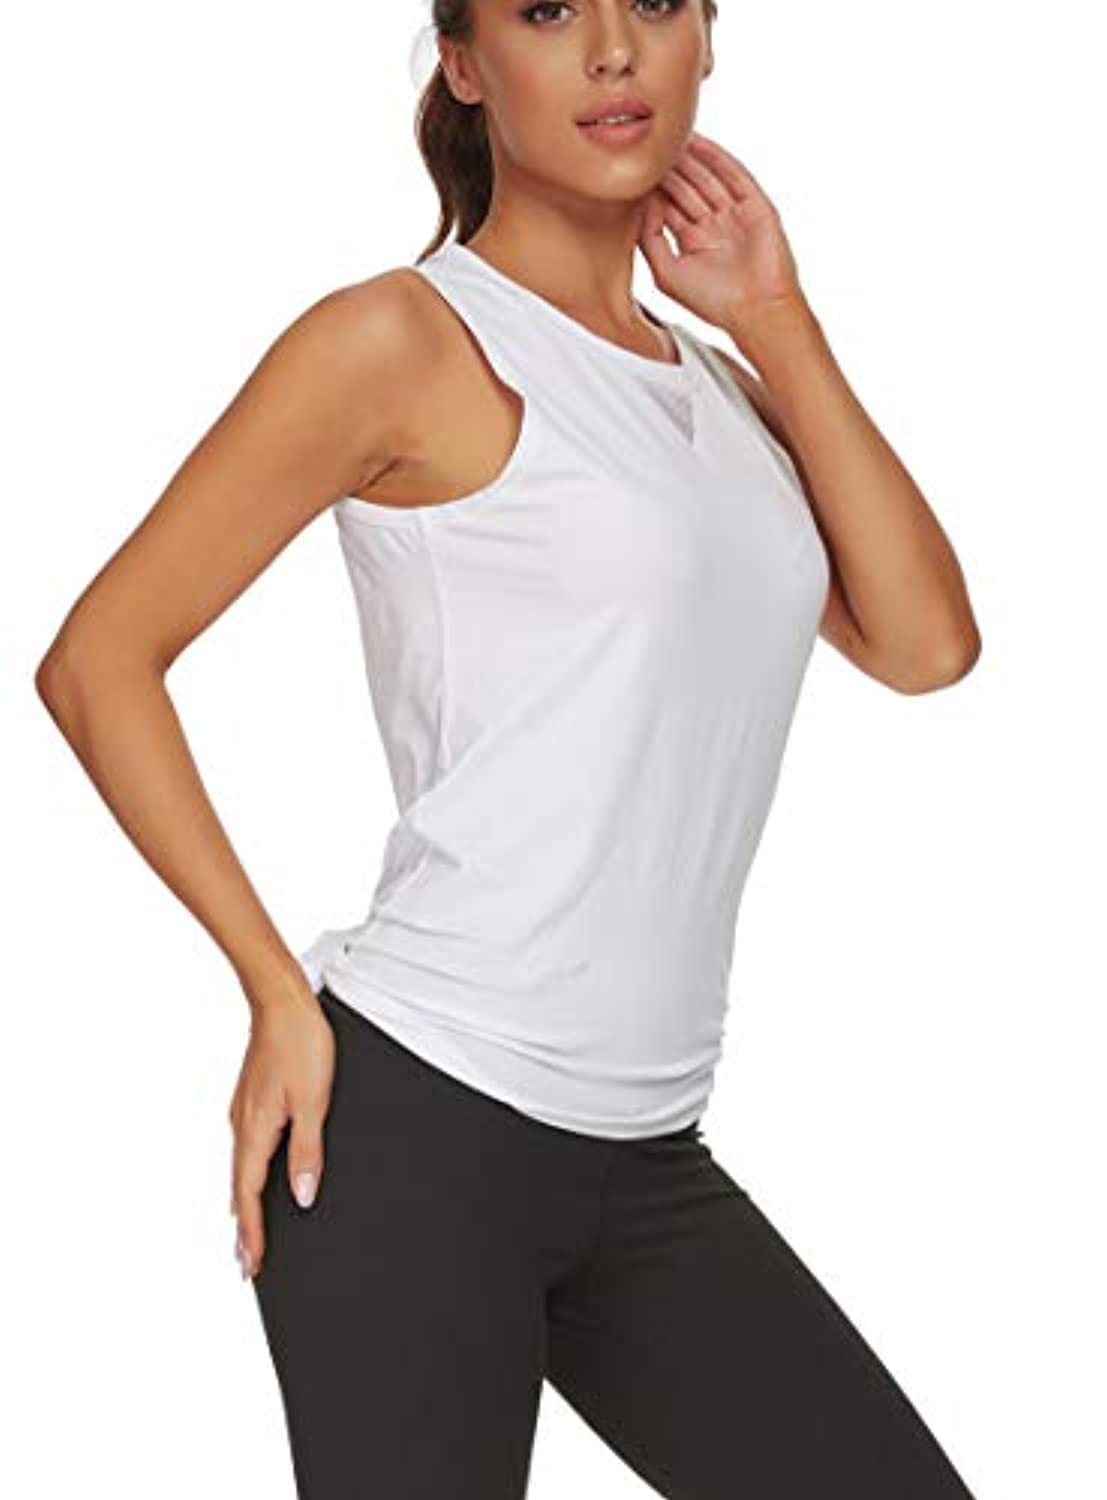  Camiseta de yoga sin mangas de compresión súper suave para mujer,  camiseta deportiva con brasier acolchado (color lila, talla S) : Ropa,  Zapatos y Joyería